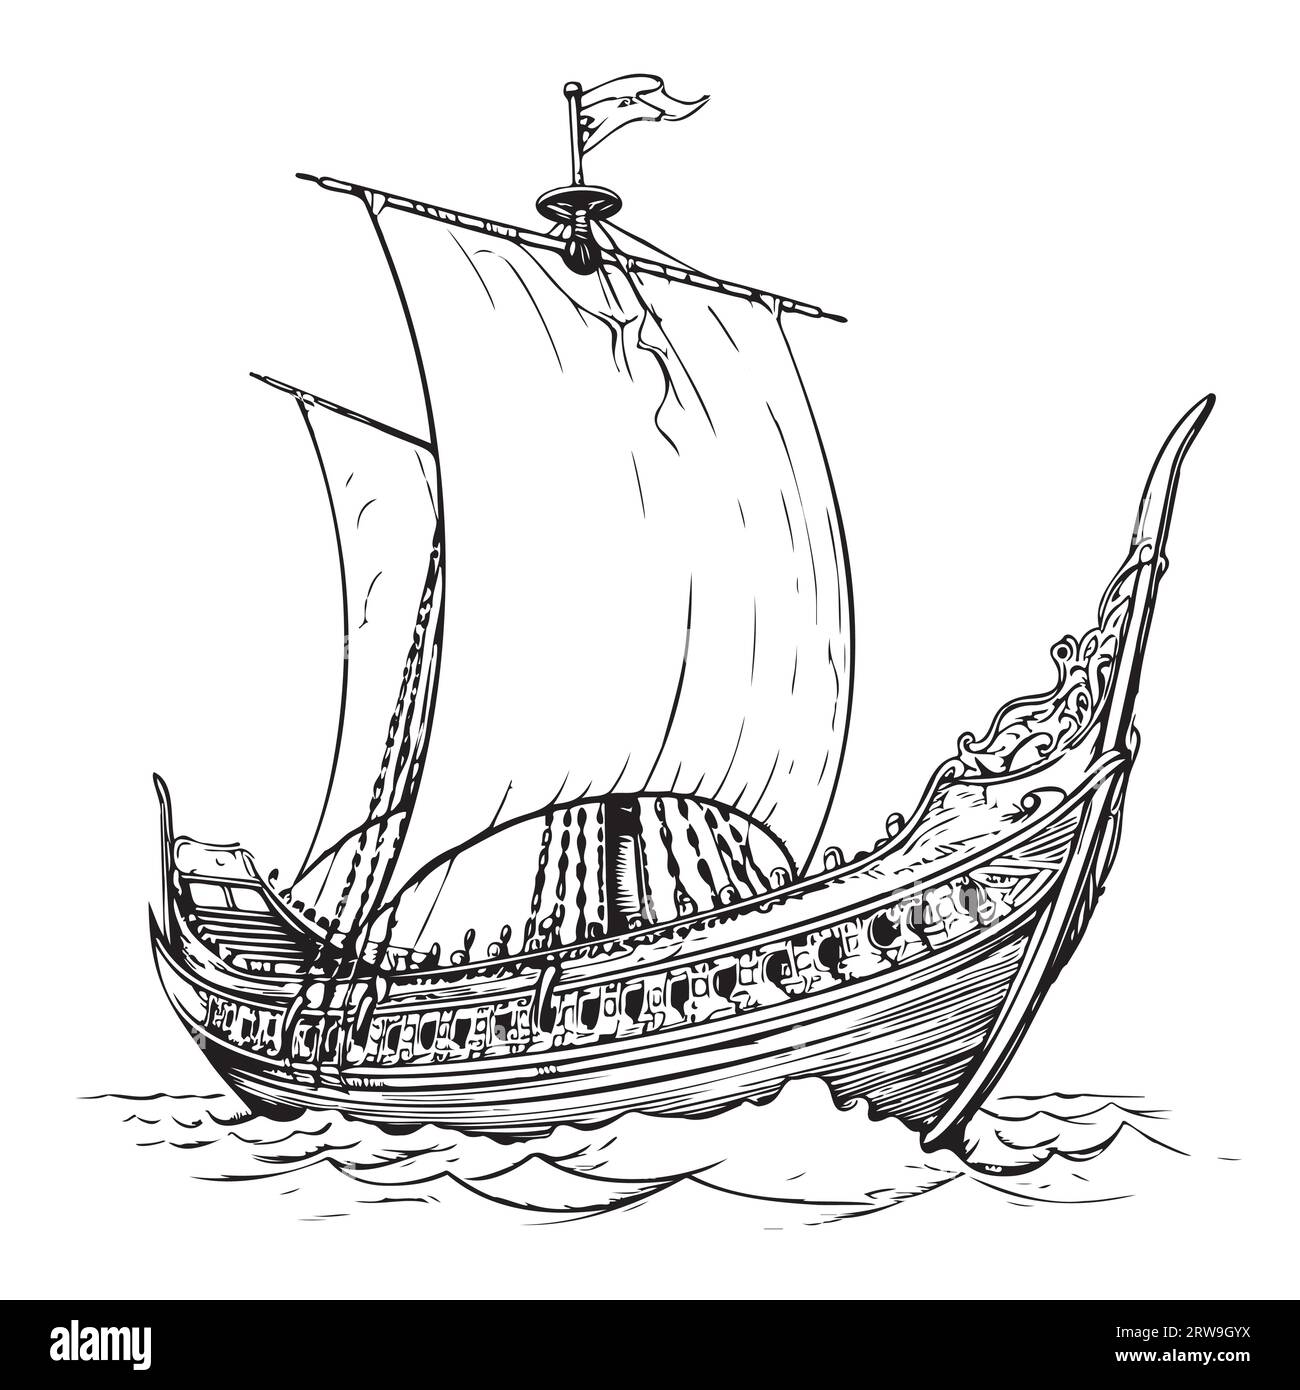 Schizzo di una nave vichinga, illustrazione vettoriale disegnata a mano Illustrazione Vettoriale